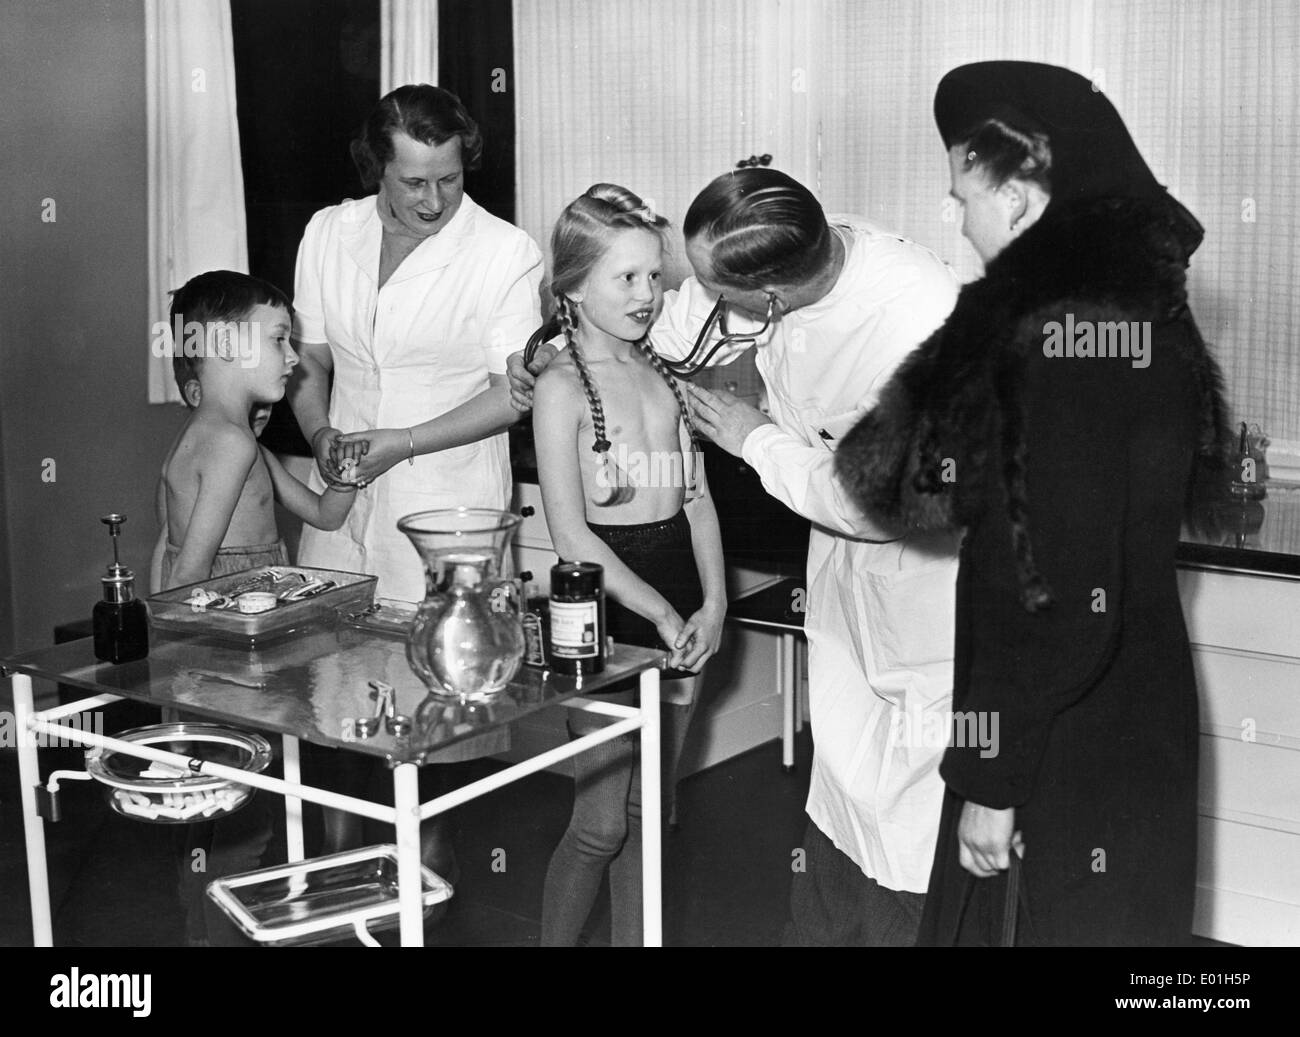 Medical examination of child. — Stock Photo © poznyakov 